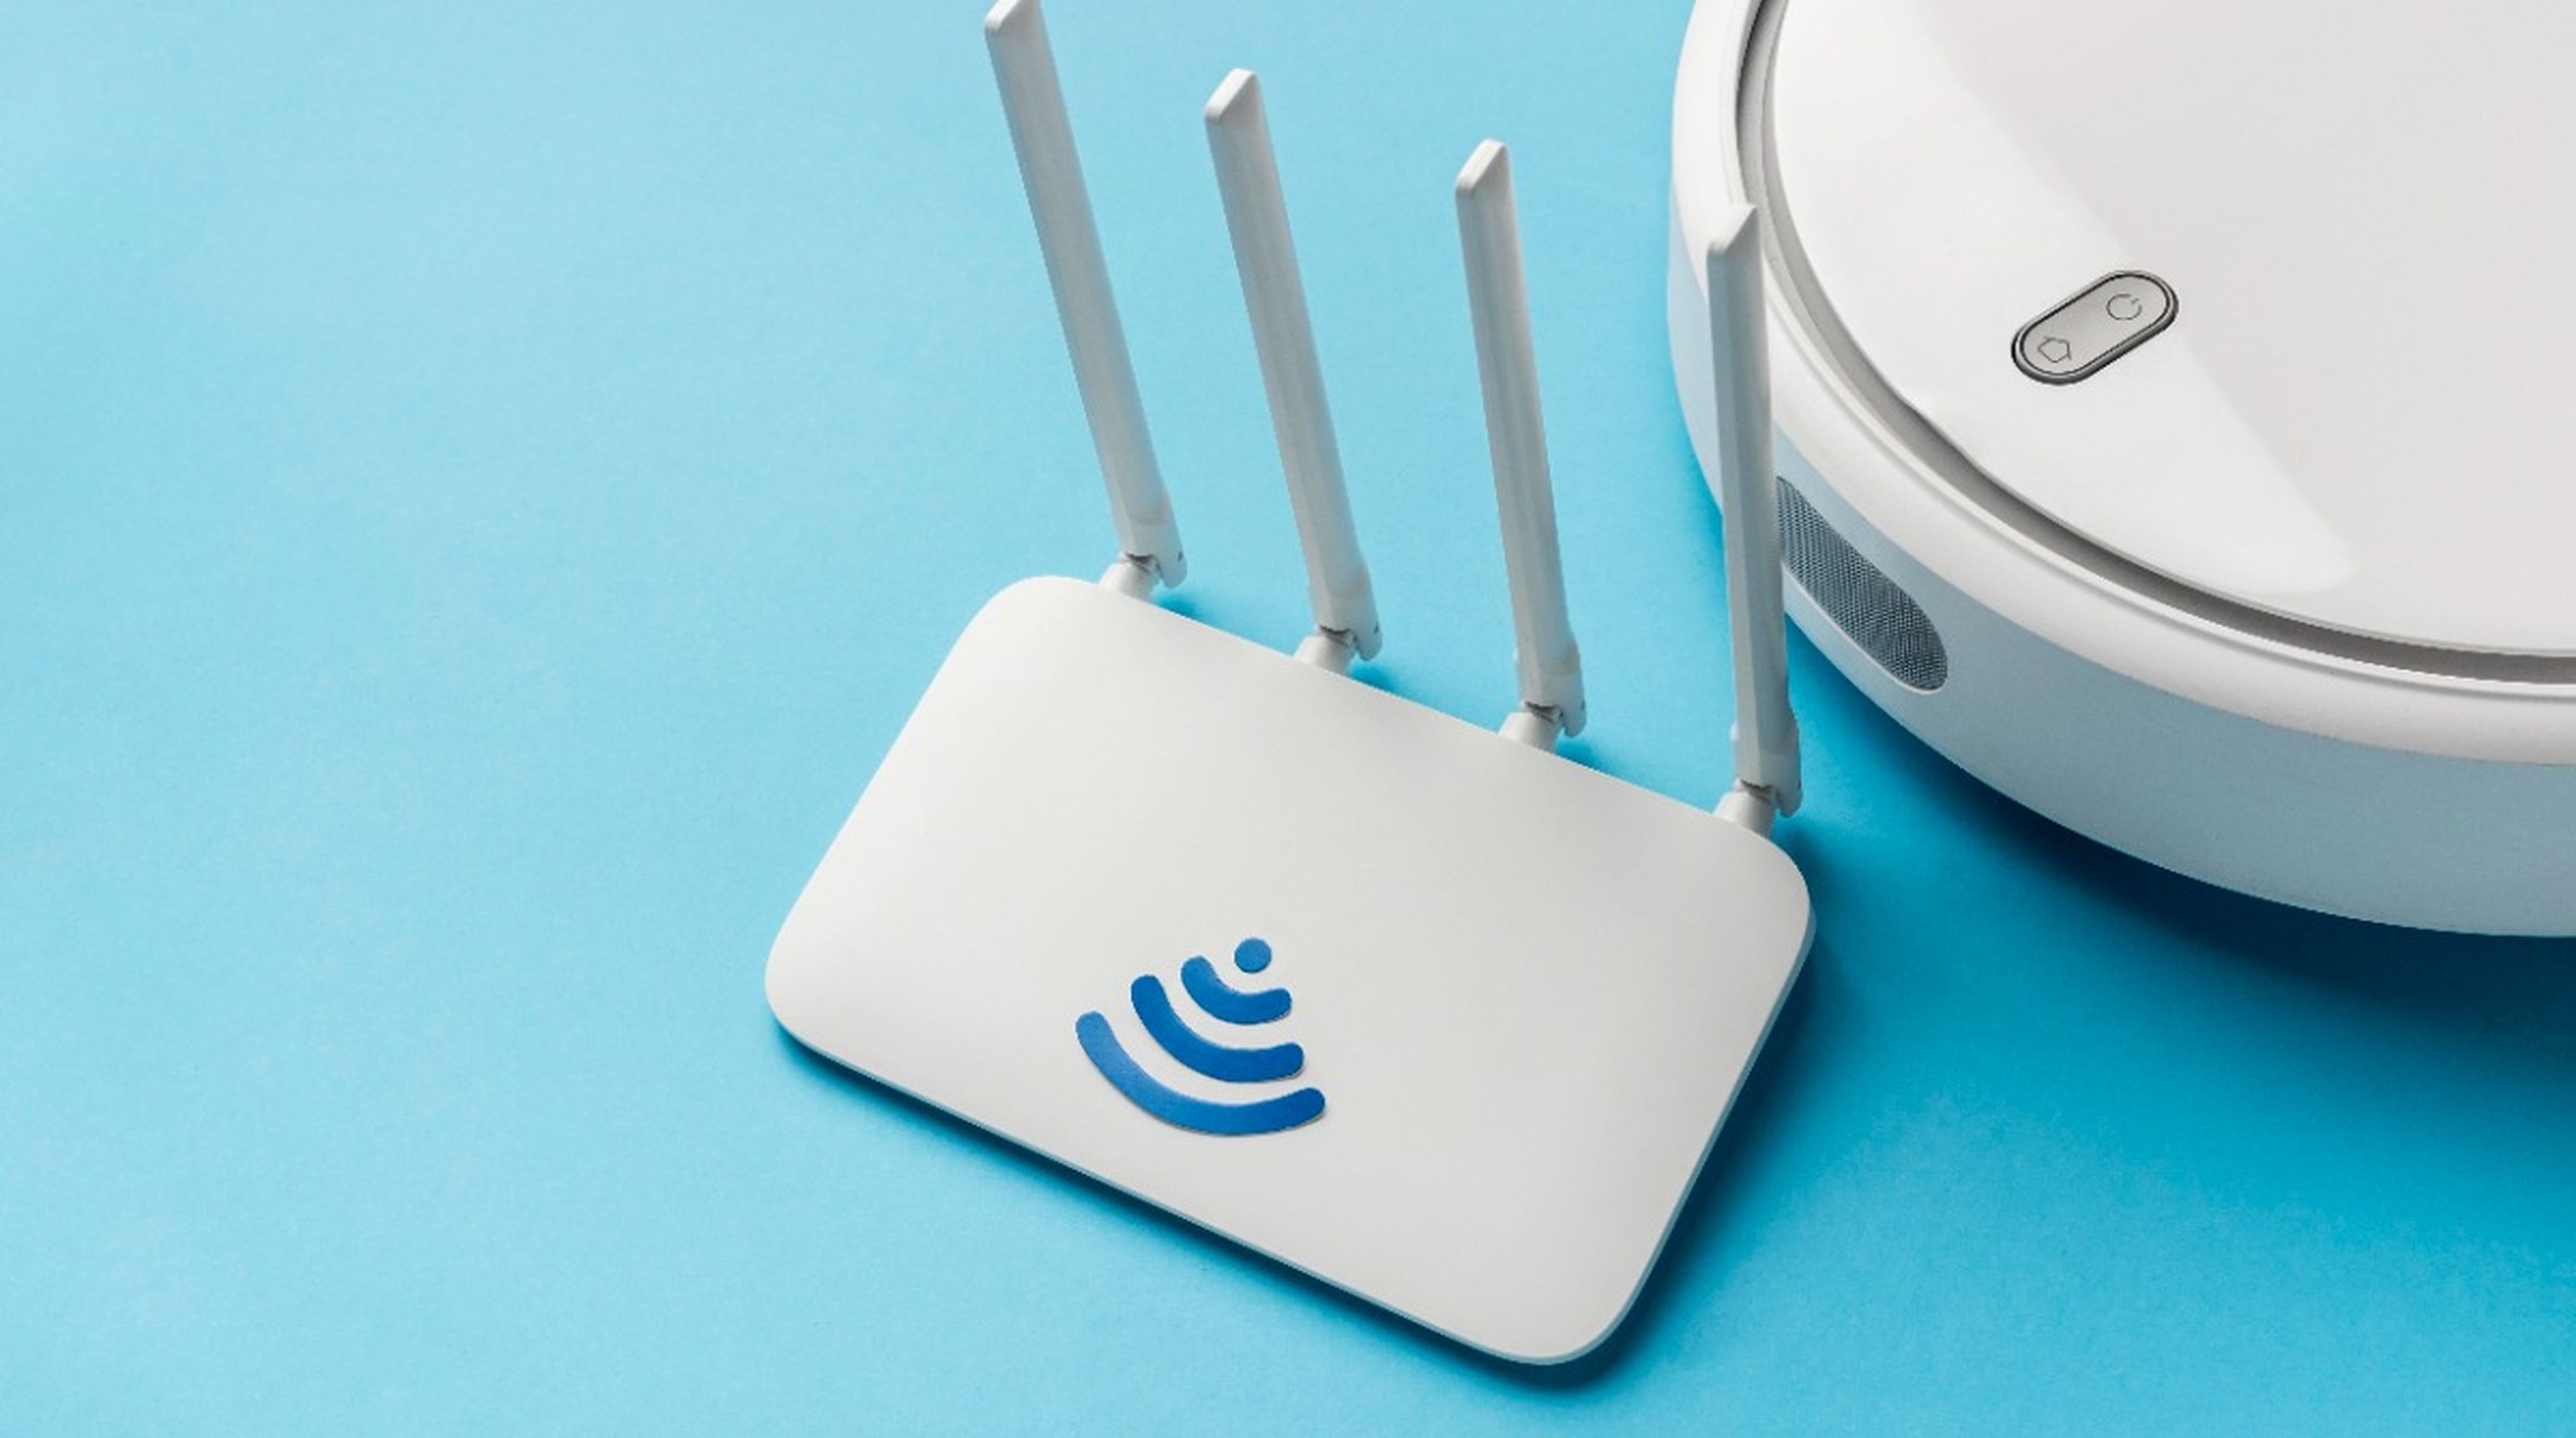 10 objetos que todos tenemos en casa junto a los que nunca deberías colocar tu router WiFi